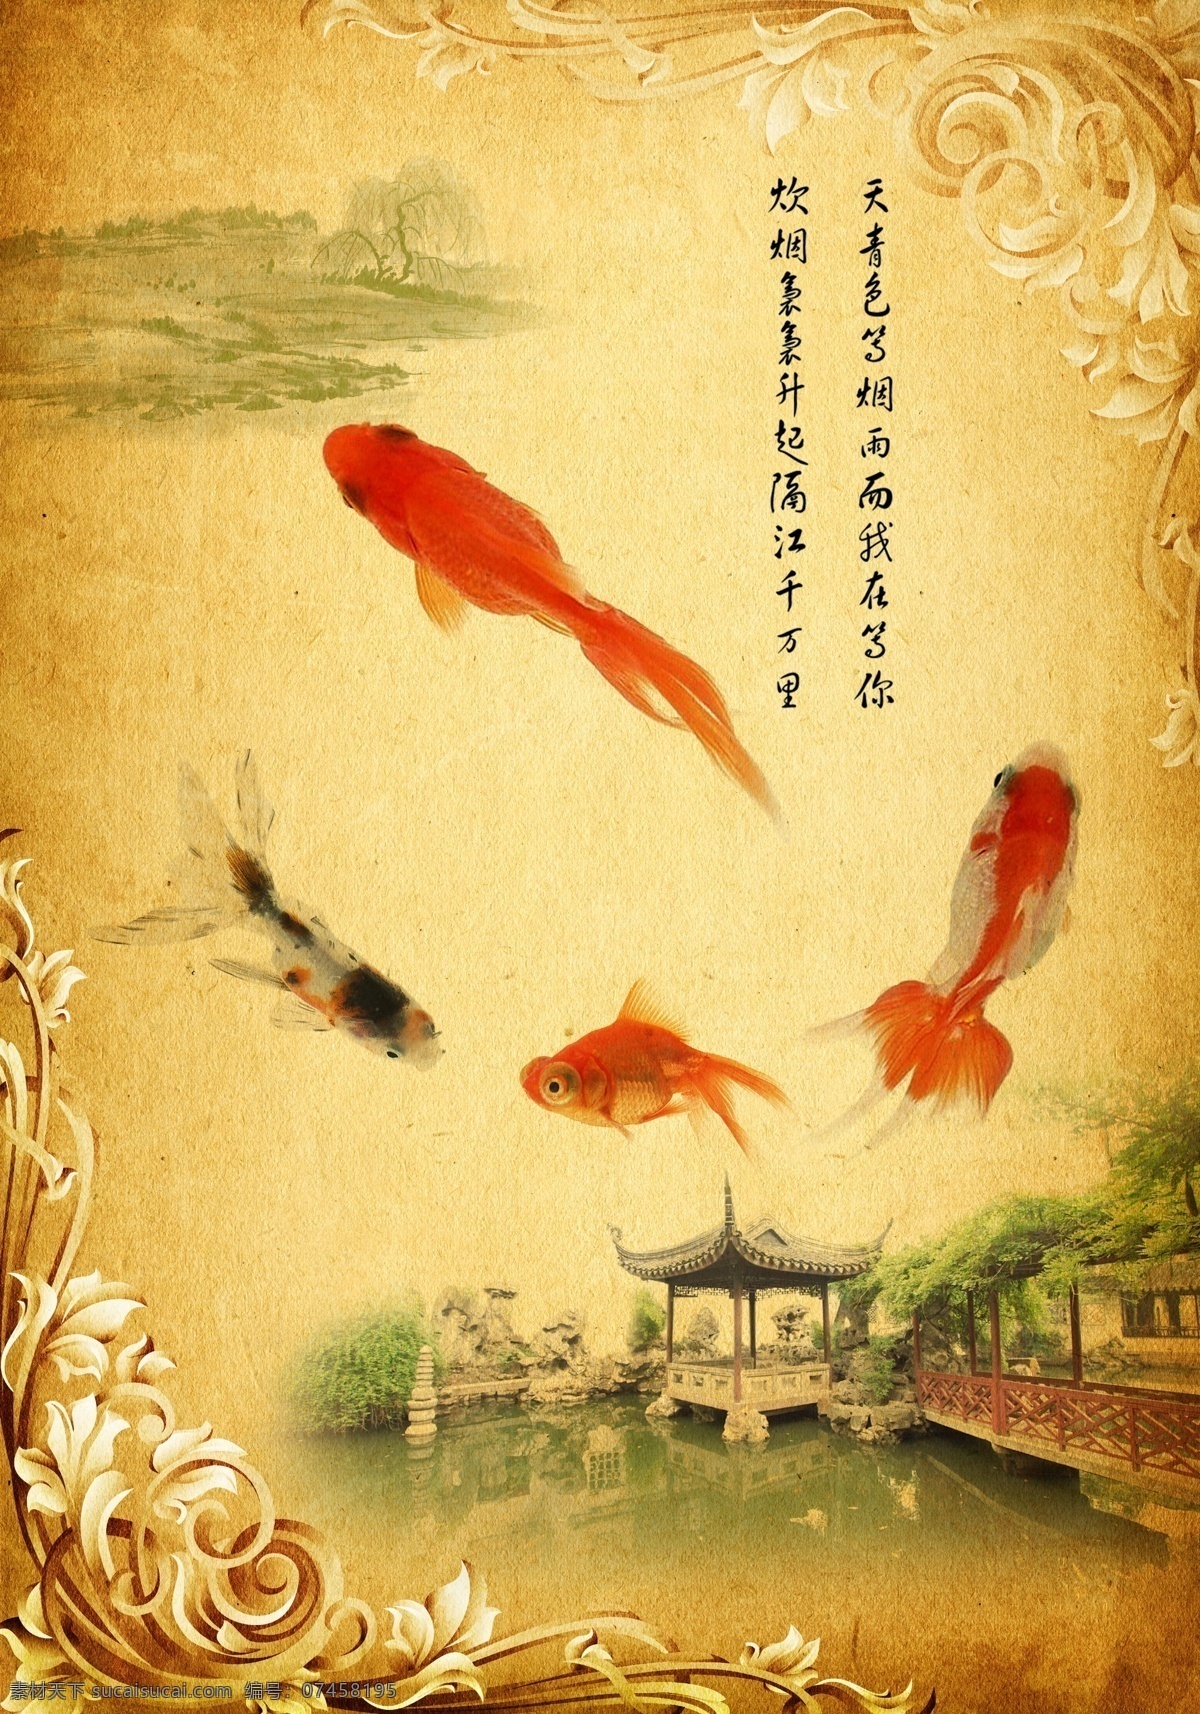 中国 元素 金鱼 海报 中国元素 背景 中国风 亭子 花边 花纹 书画 江南 园林 边框 锦鲤 分层 黄色